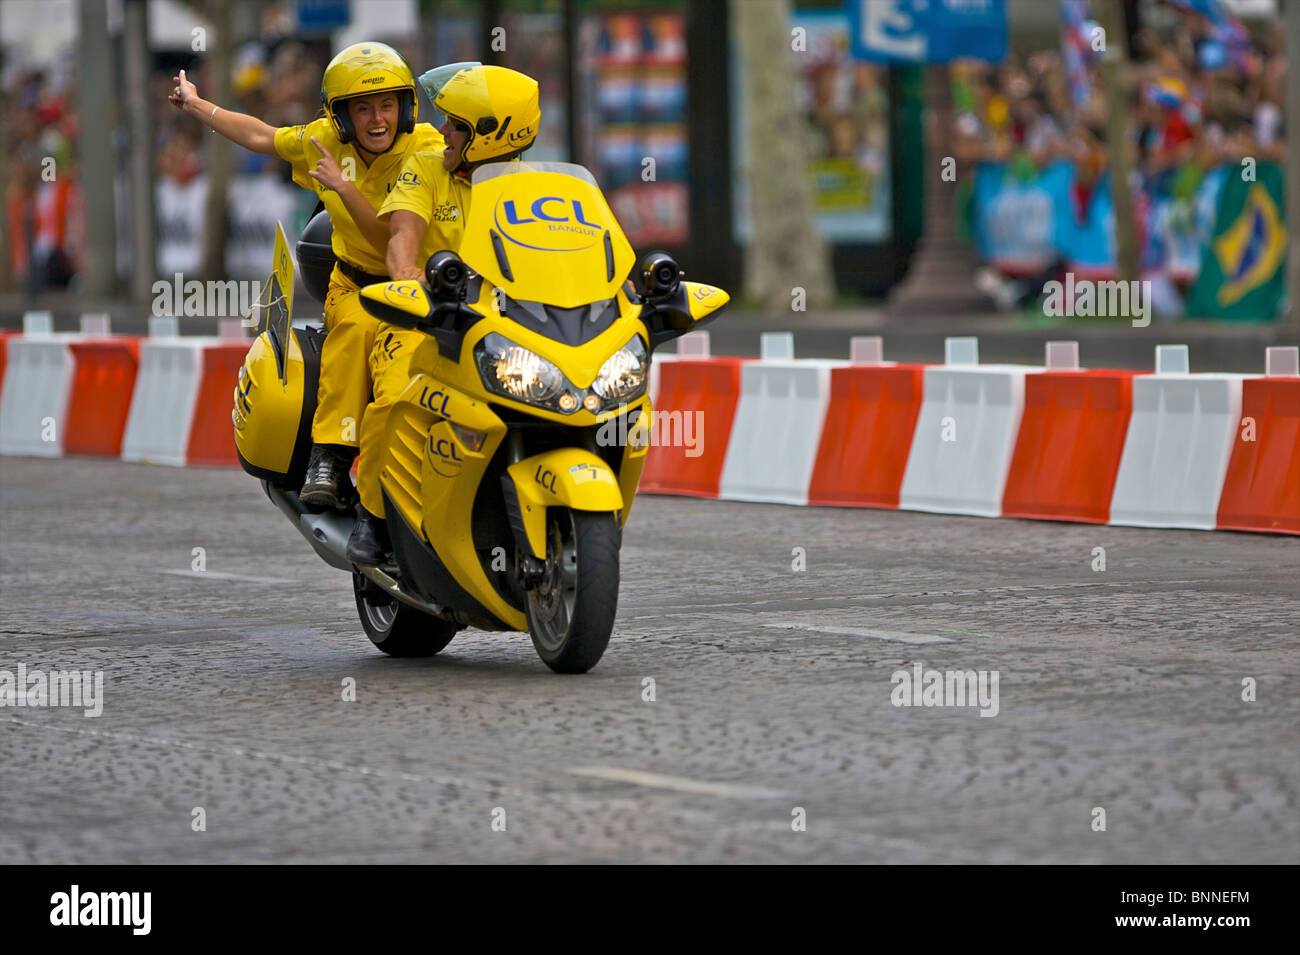 Le LCL conduire guides moto le Tour de France cyclistes professionnels sur  les Champs Elysées à Paris, France Photo Stock - Alamy